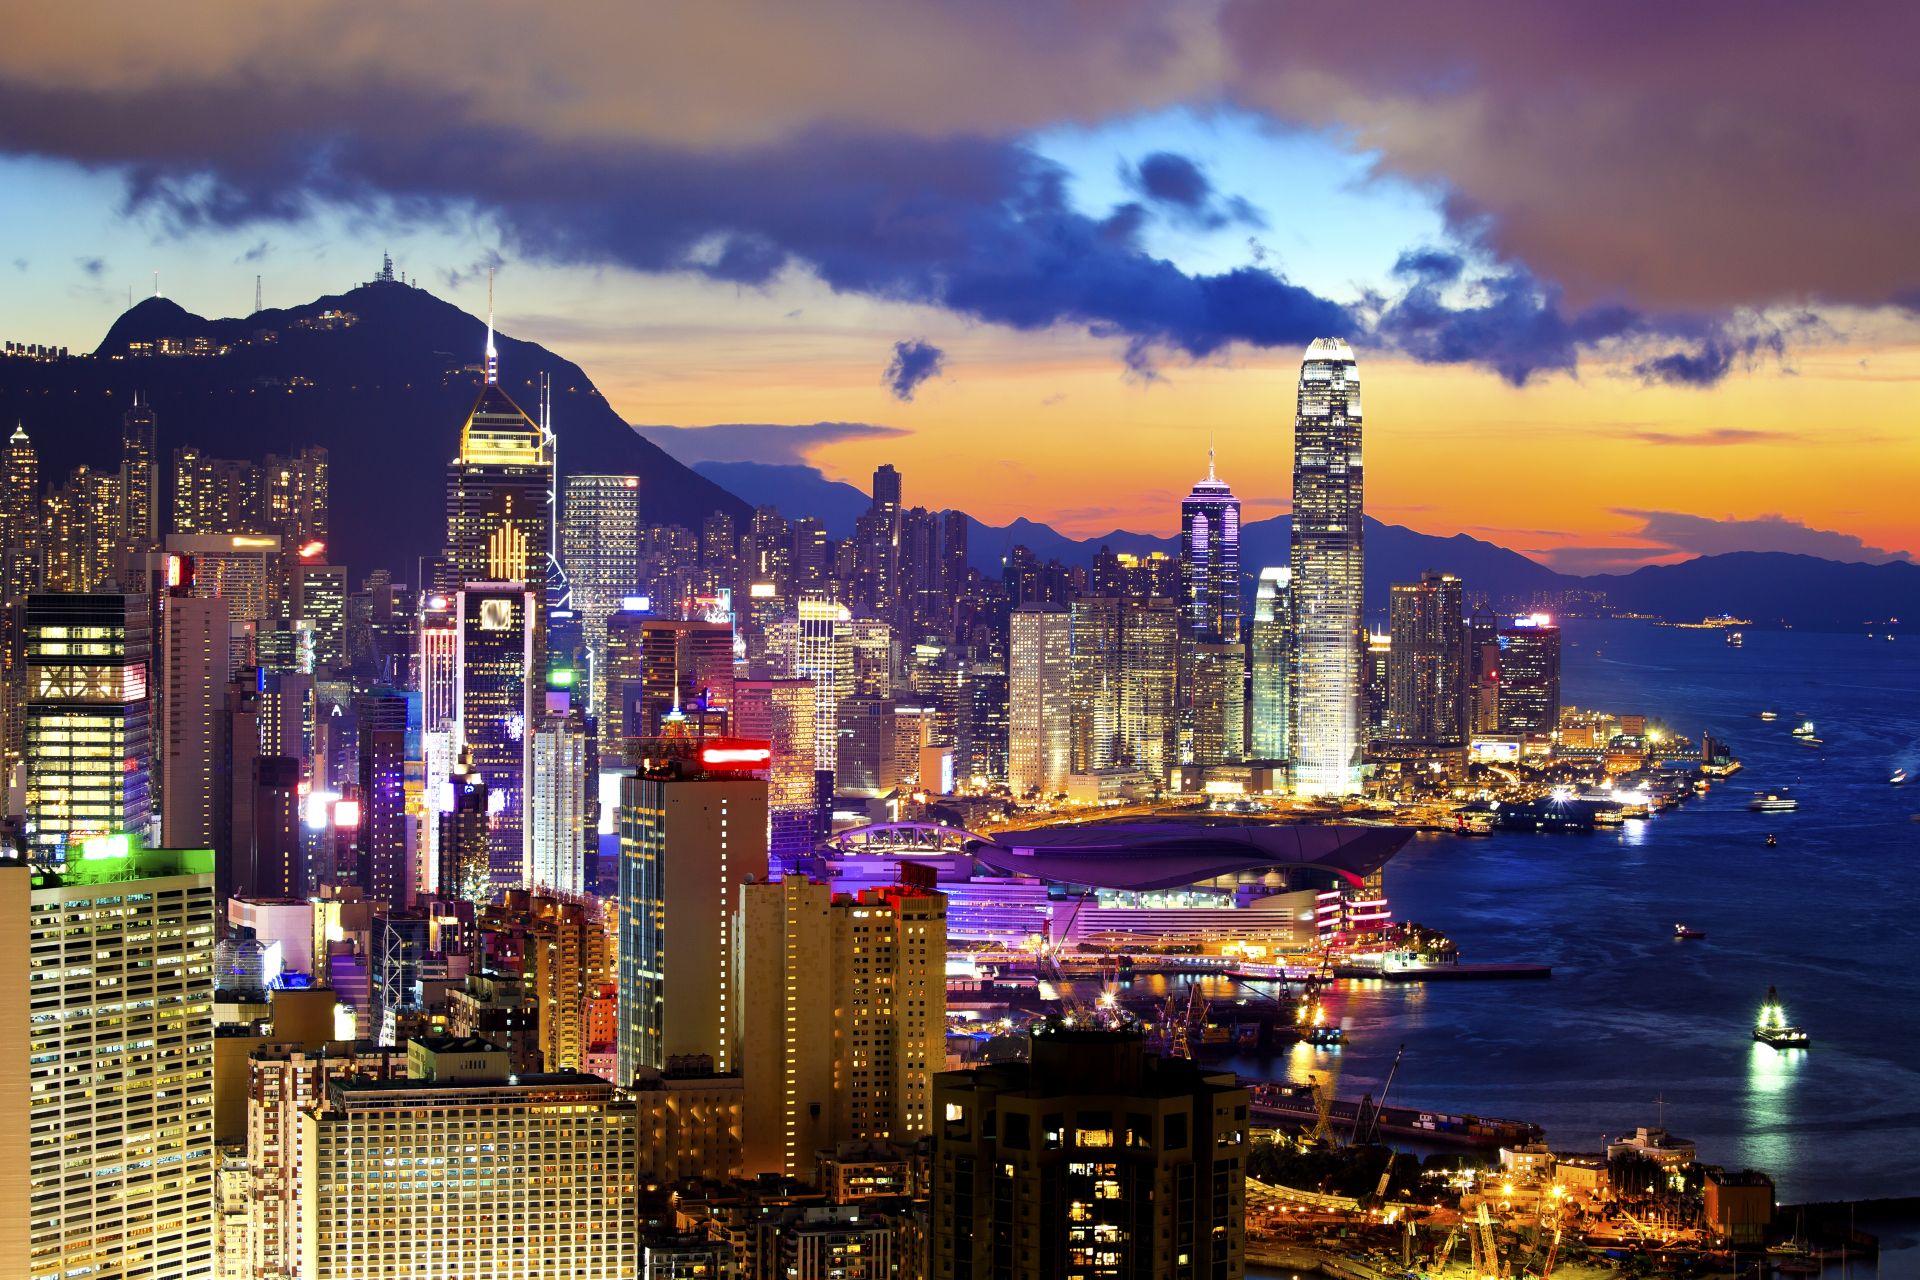 Le centre-ville et les bâtiments bondés de Hong Kong